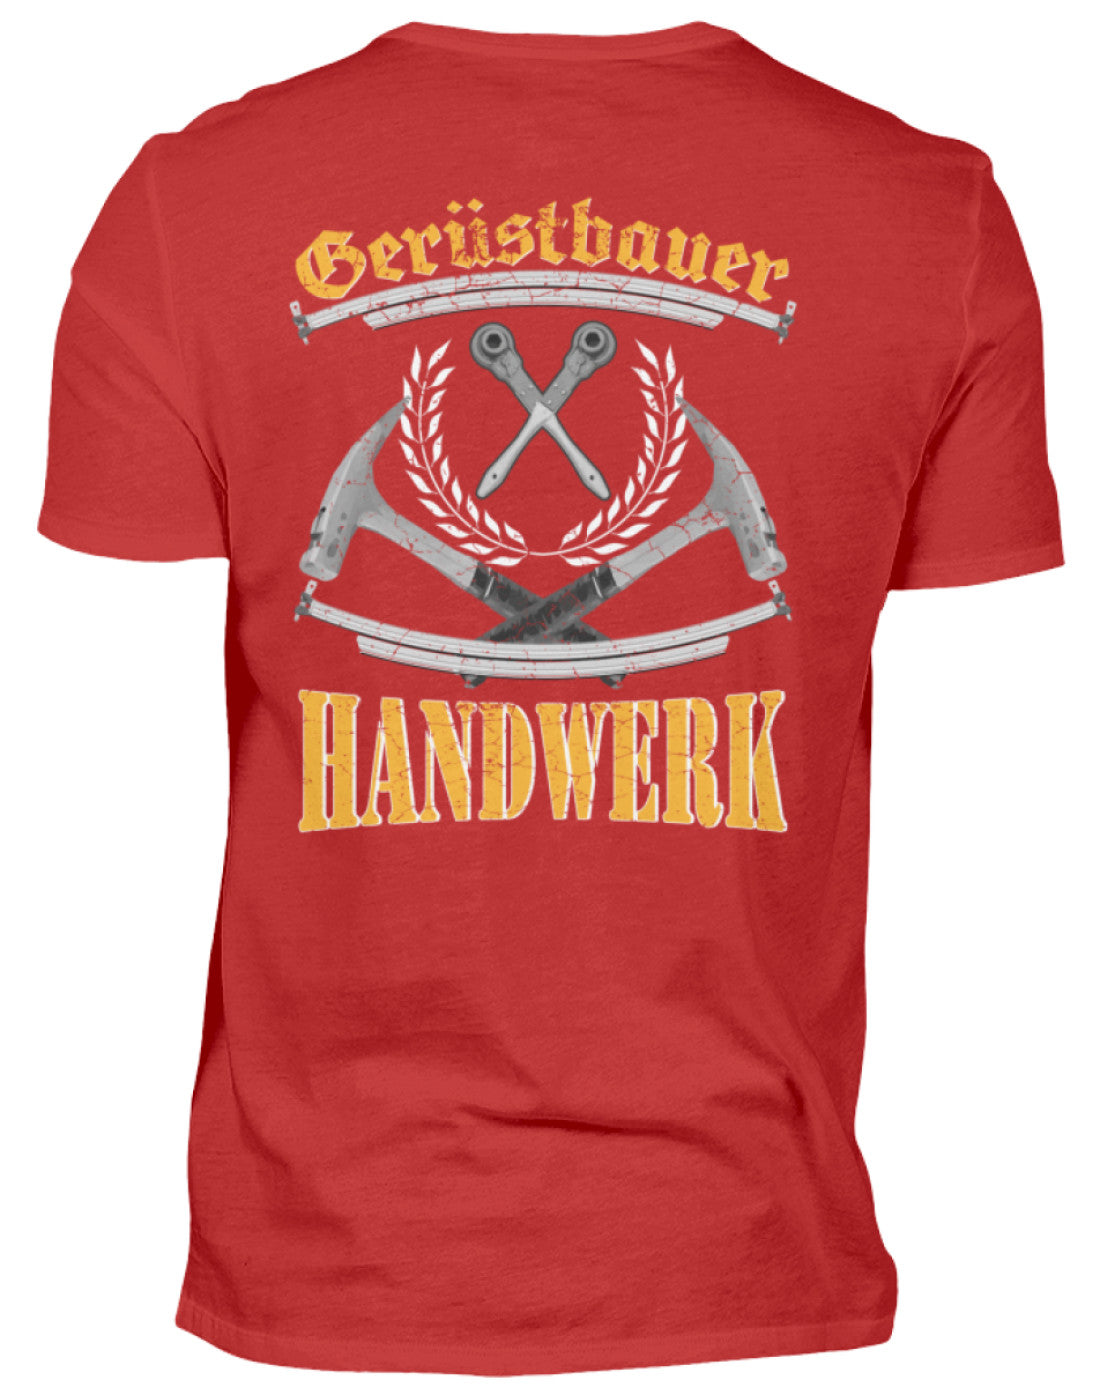 Gerüstbauer T-Shirt / Handwerk €24.95 Gerüstbauer - Shop >>